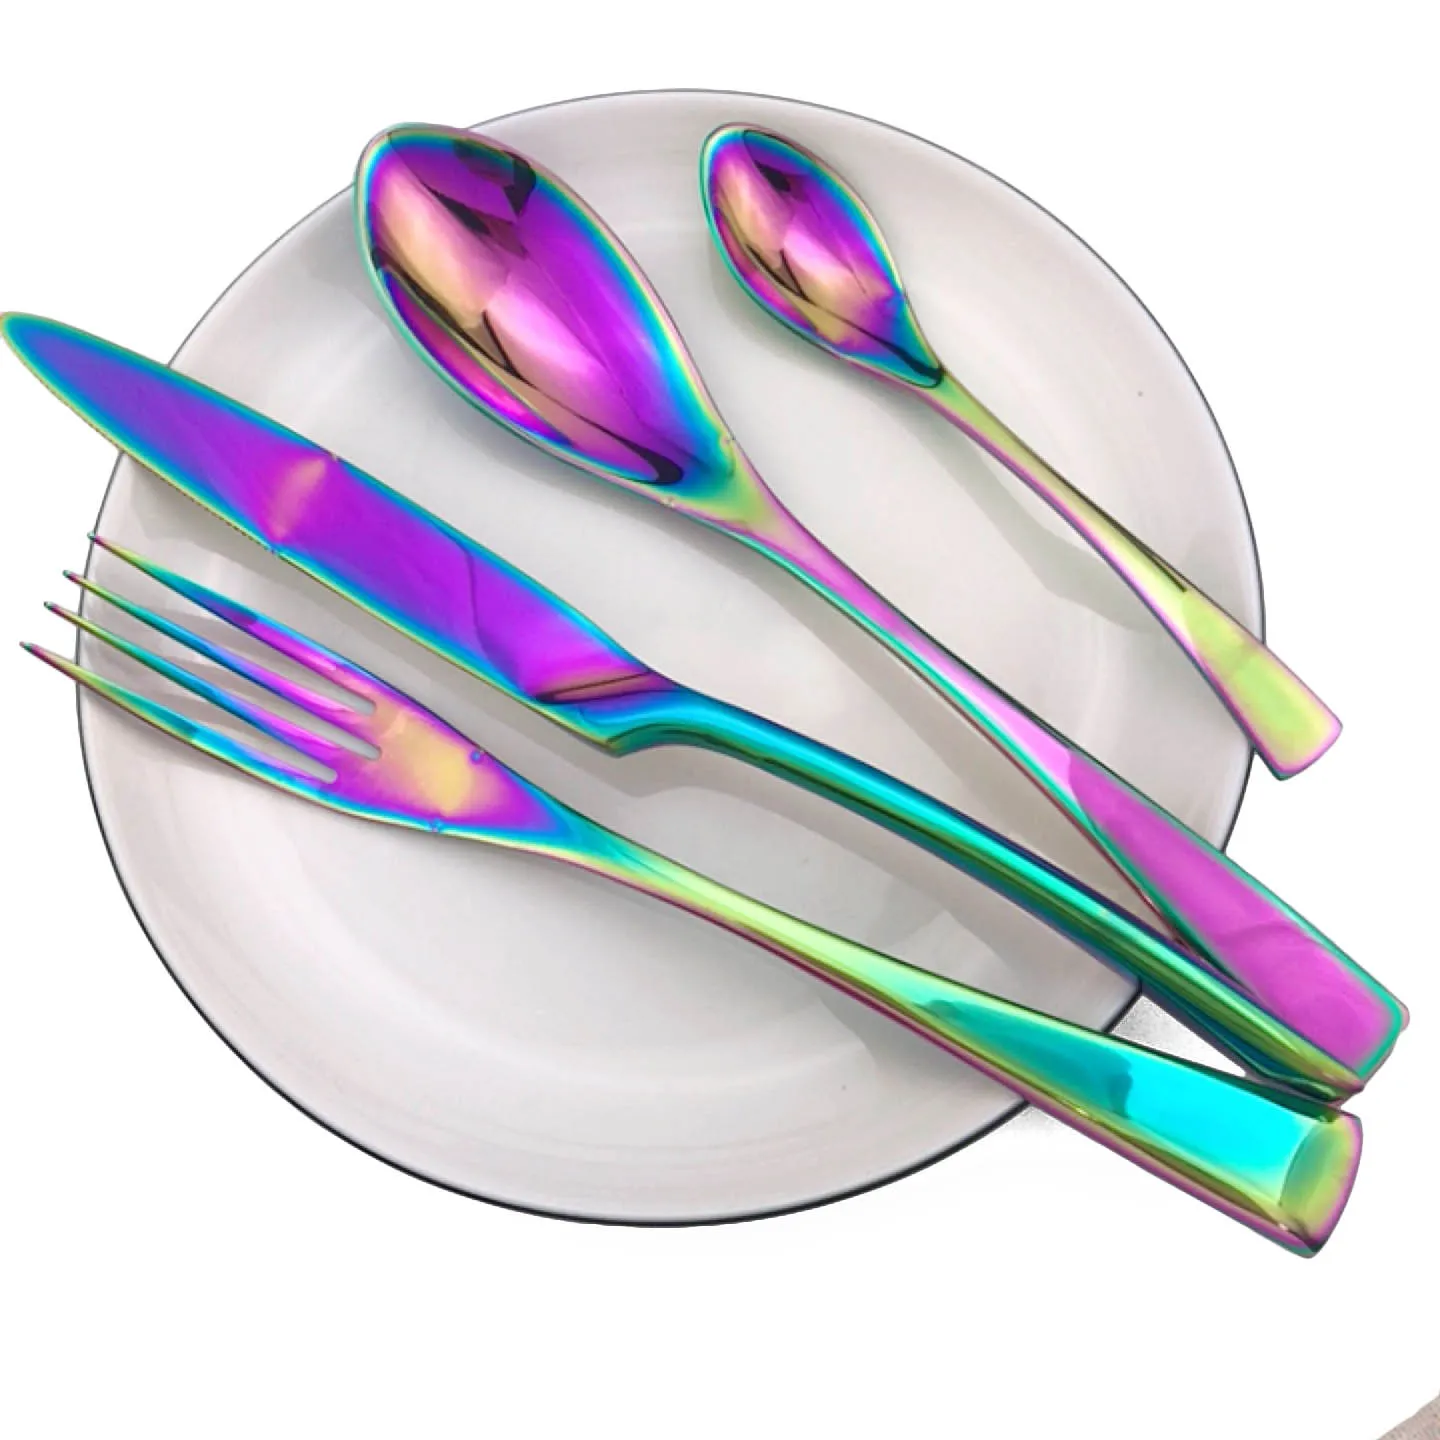 Набор из 4 цветных нож Радужный вилка ложка столовые приборы набор 18/10 прибор из нержавеющей стали наборы посуды оптом